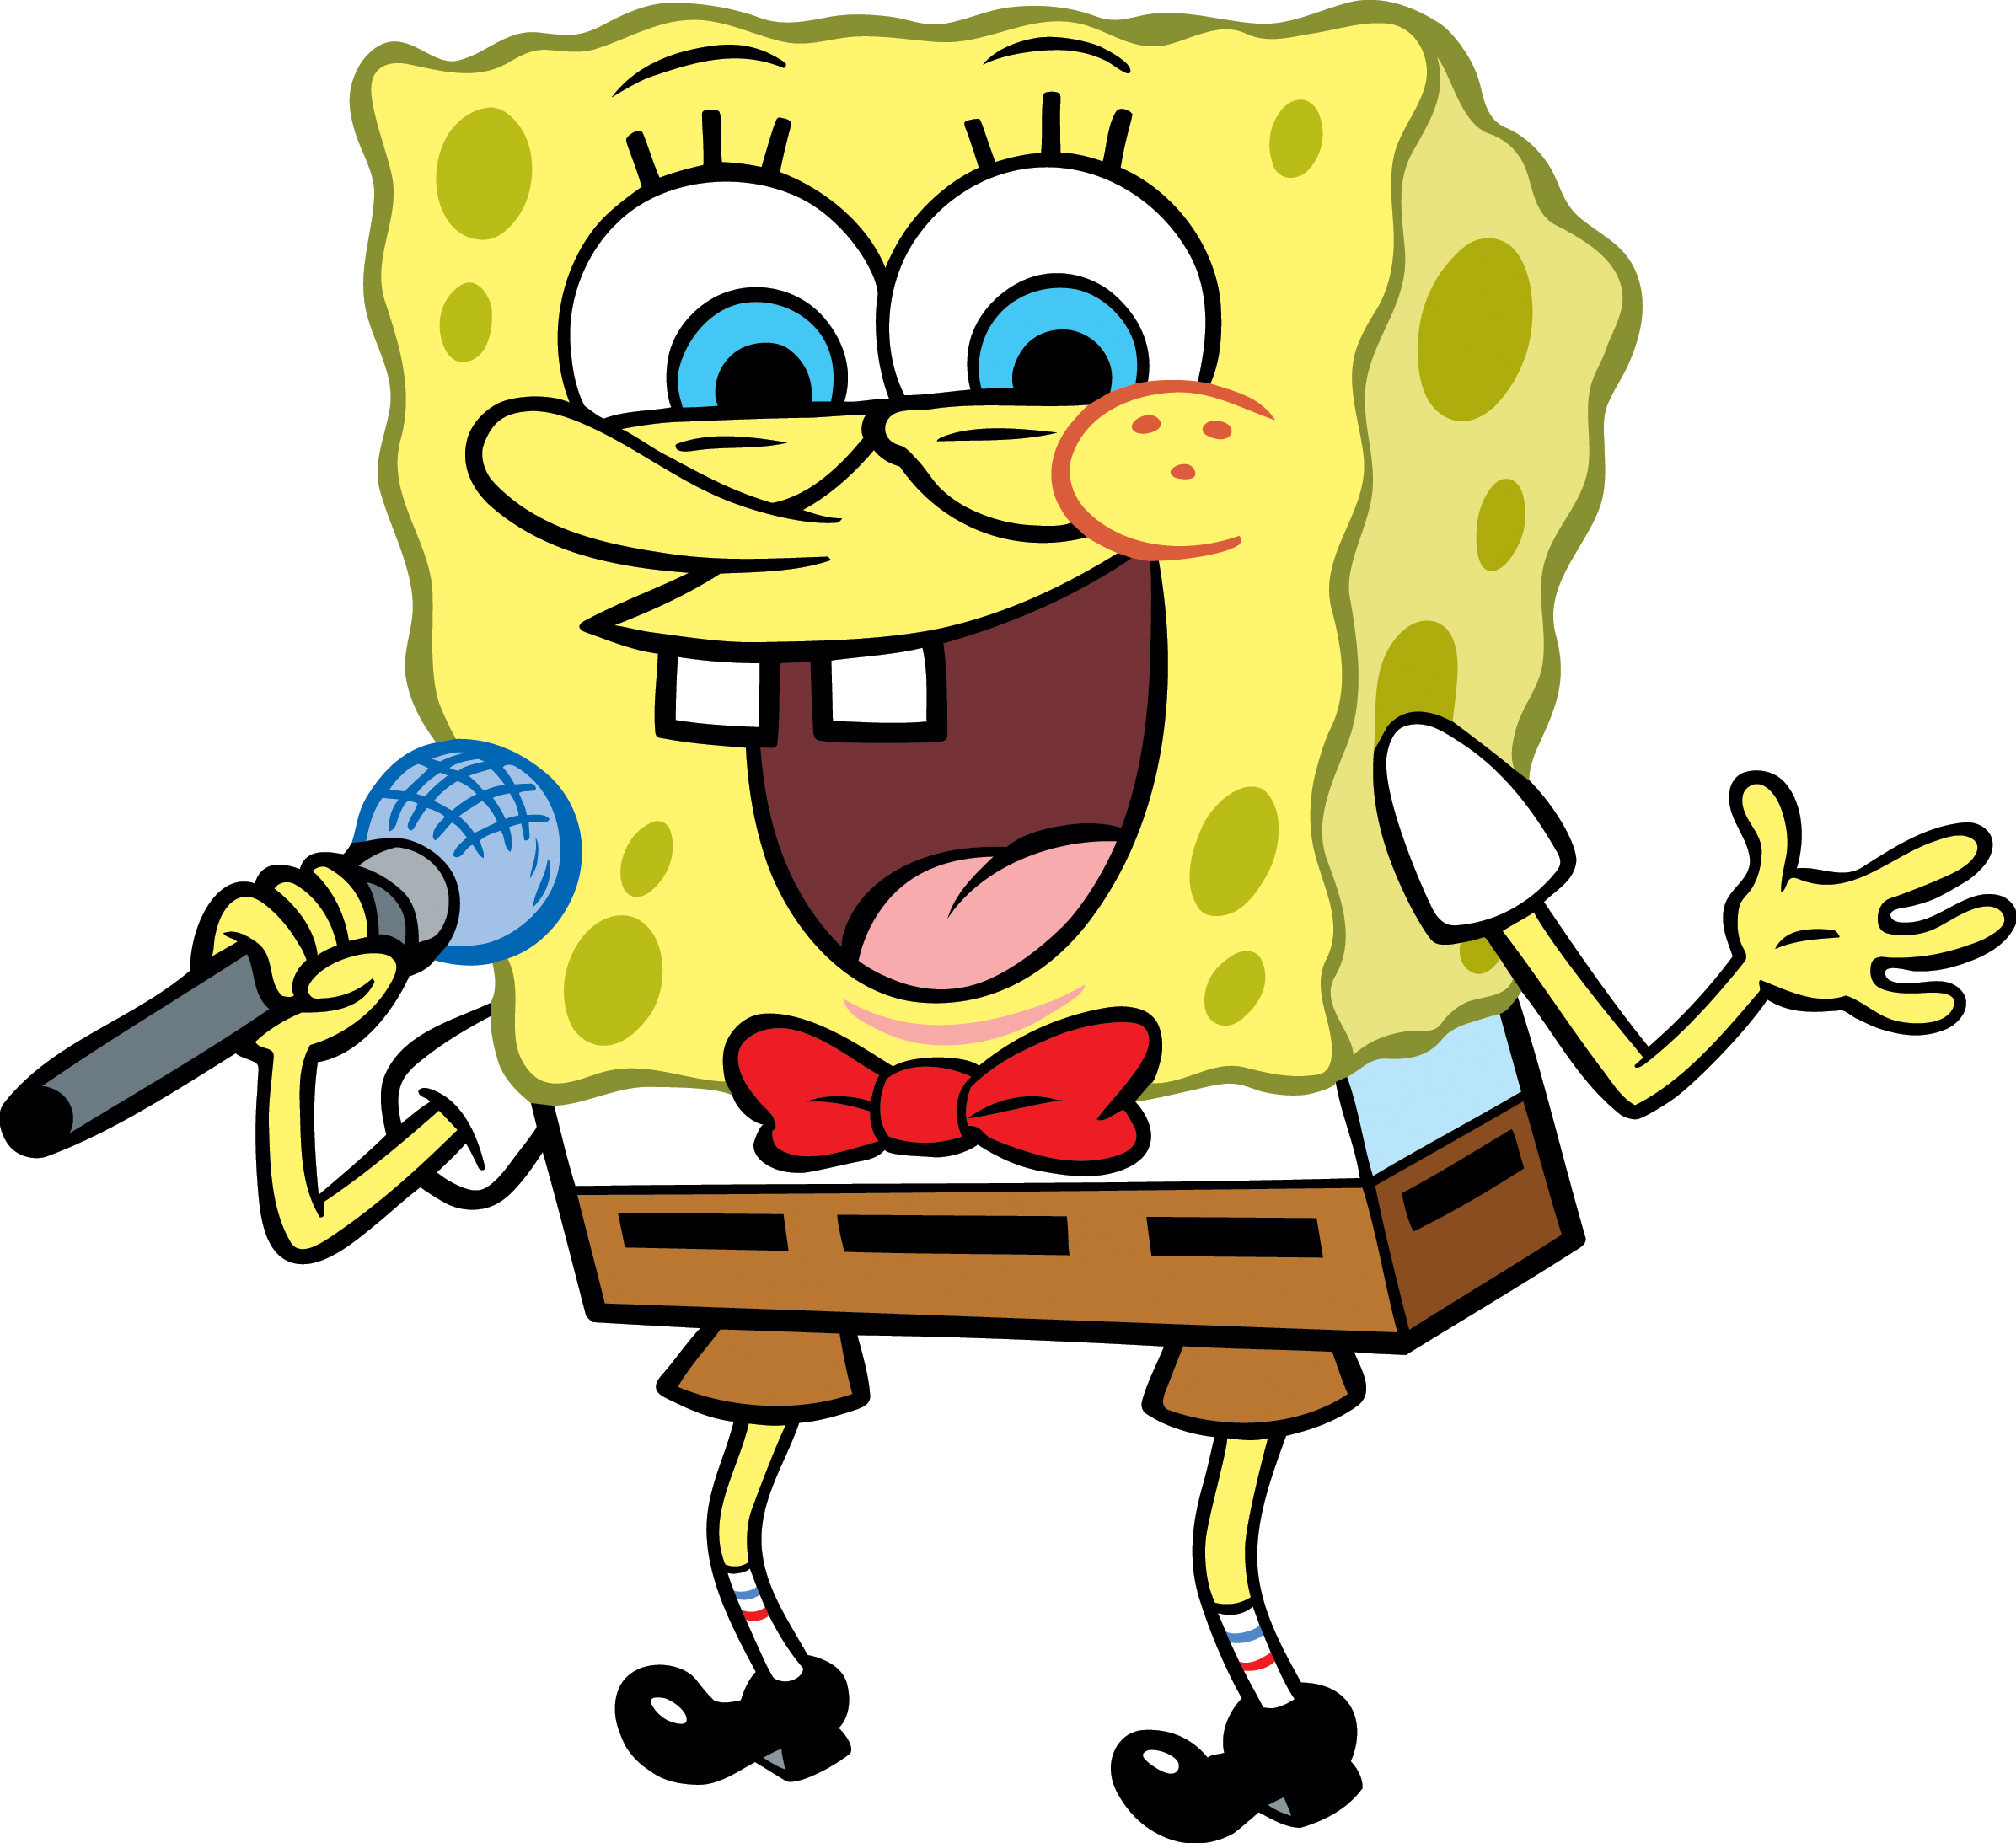 1000+ images about Spongebob Squarepants